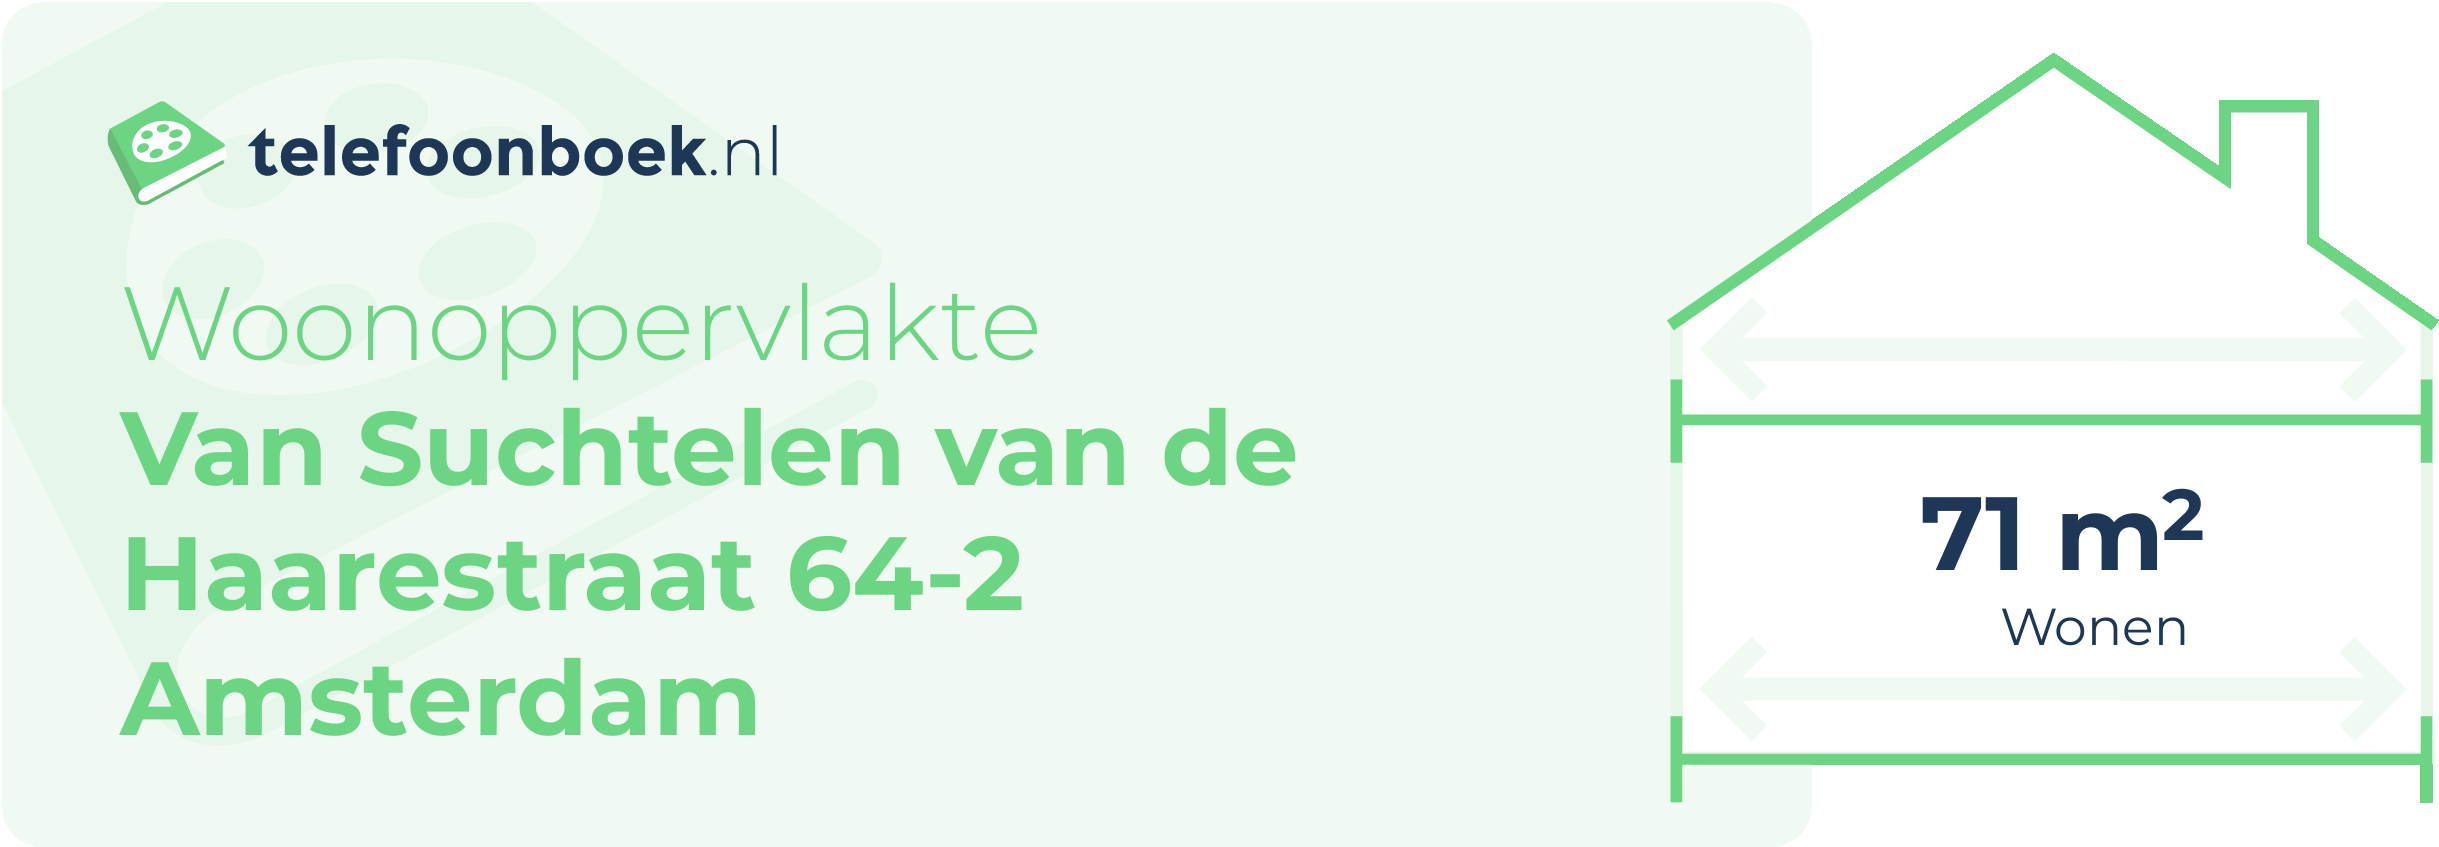 Woonoppervlakte Van Suchtelen Van De Haarestraat 64-2 Amsterdam